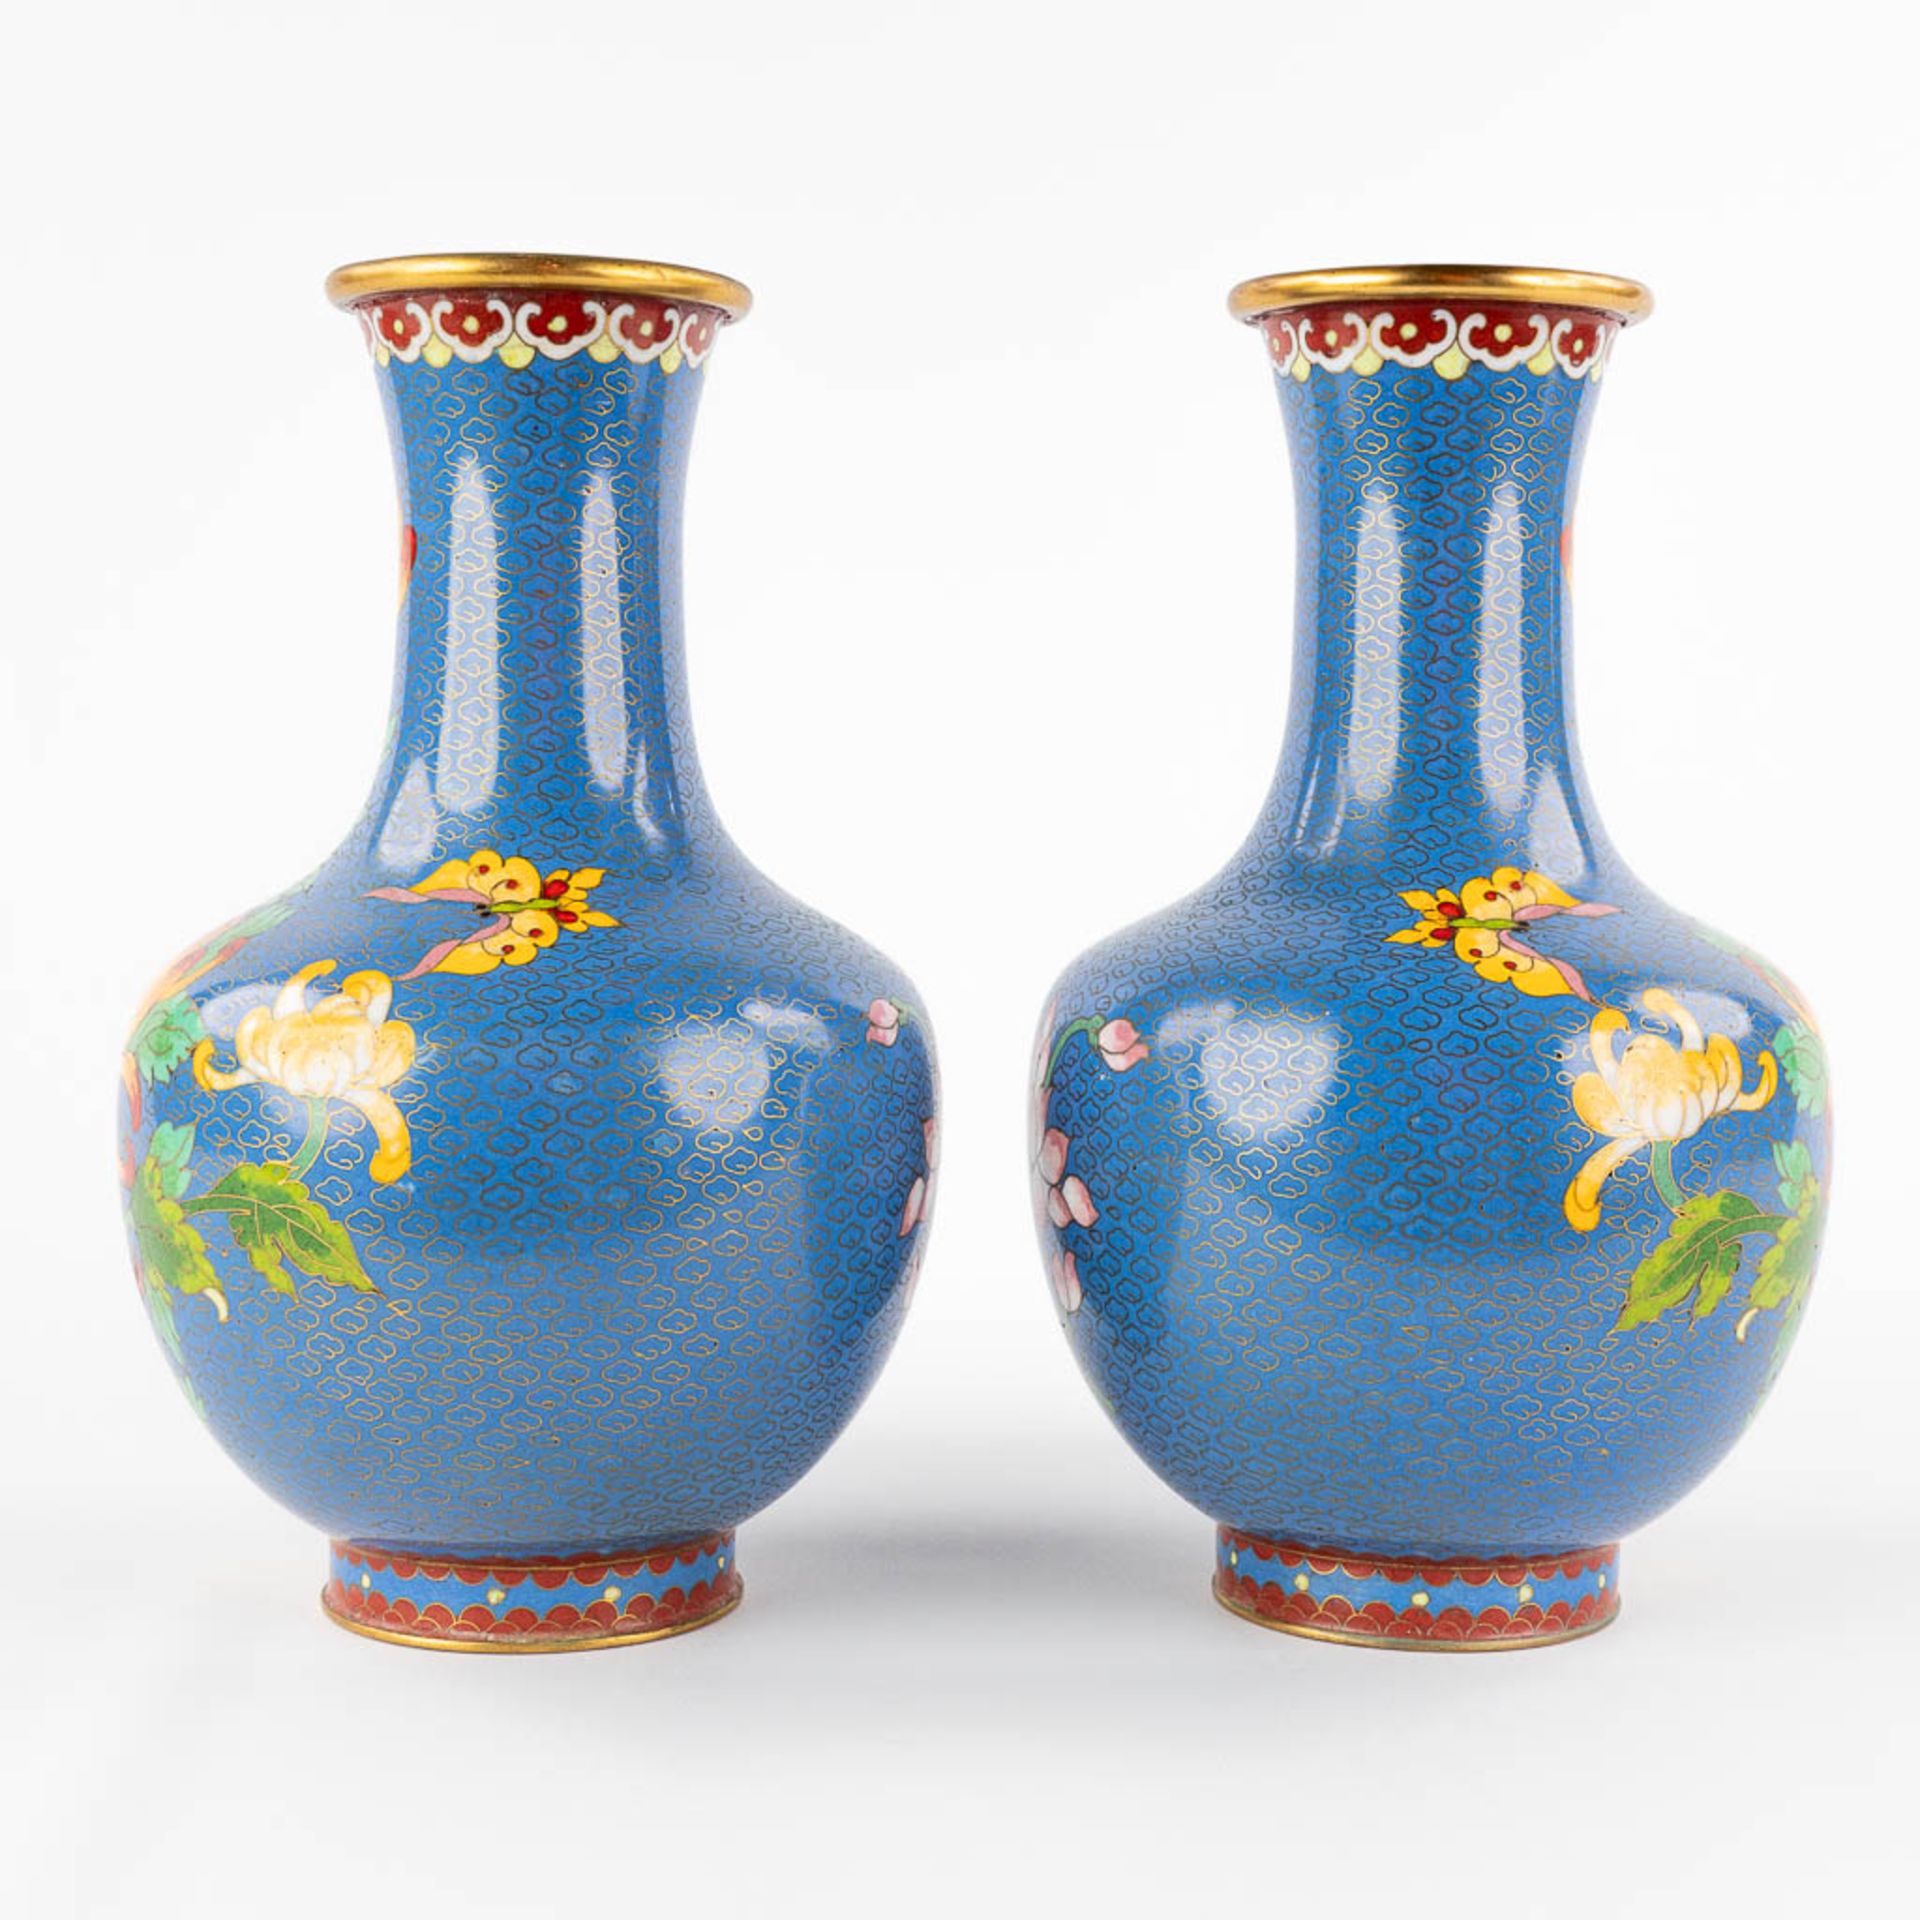 Five Oriental vases, cloisonné bronze. 20th C. (H:25 cm) - Image 4 of 27